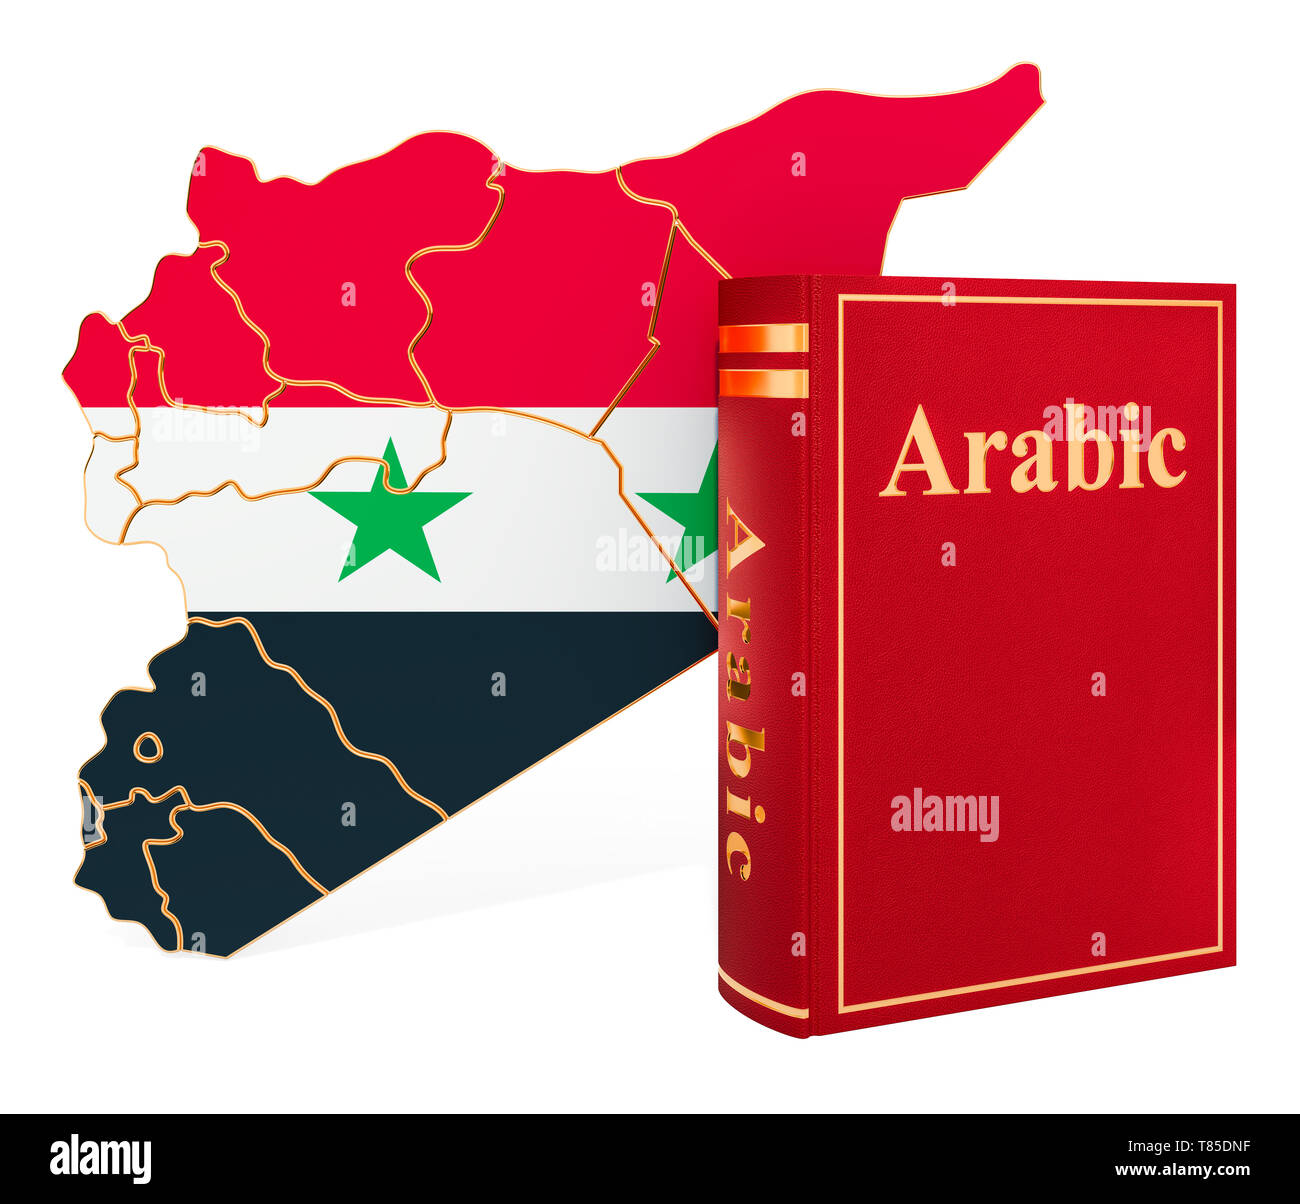 Arabische Sprache Buch mit Karte von Syrien, 3D-Rendering auf weißem Hintergrund Stockfoto